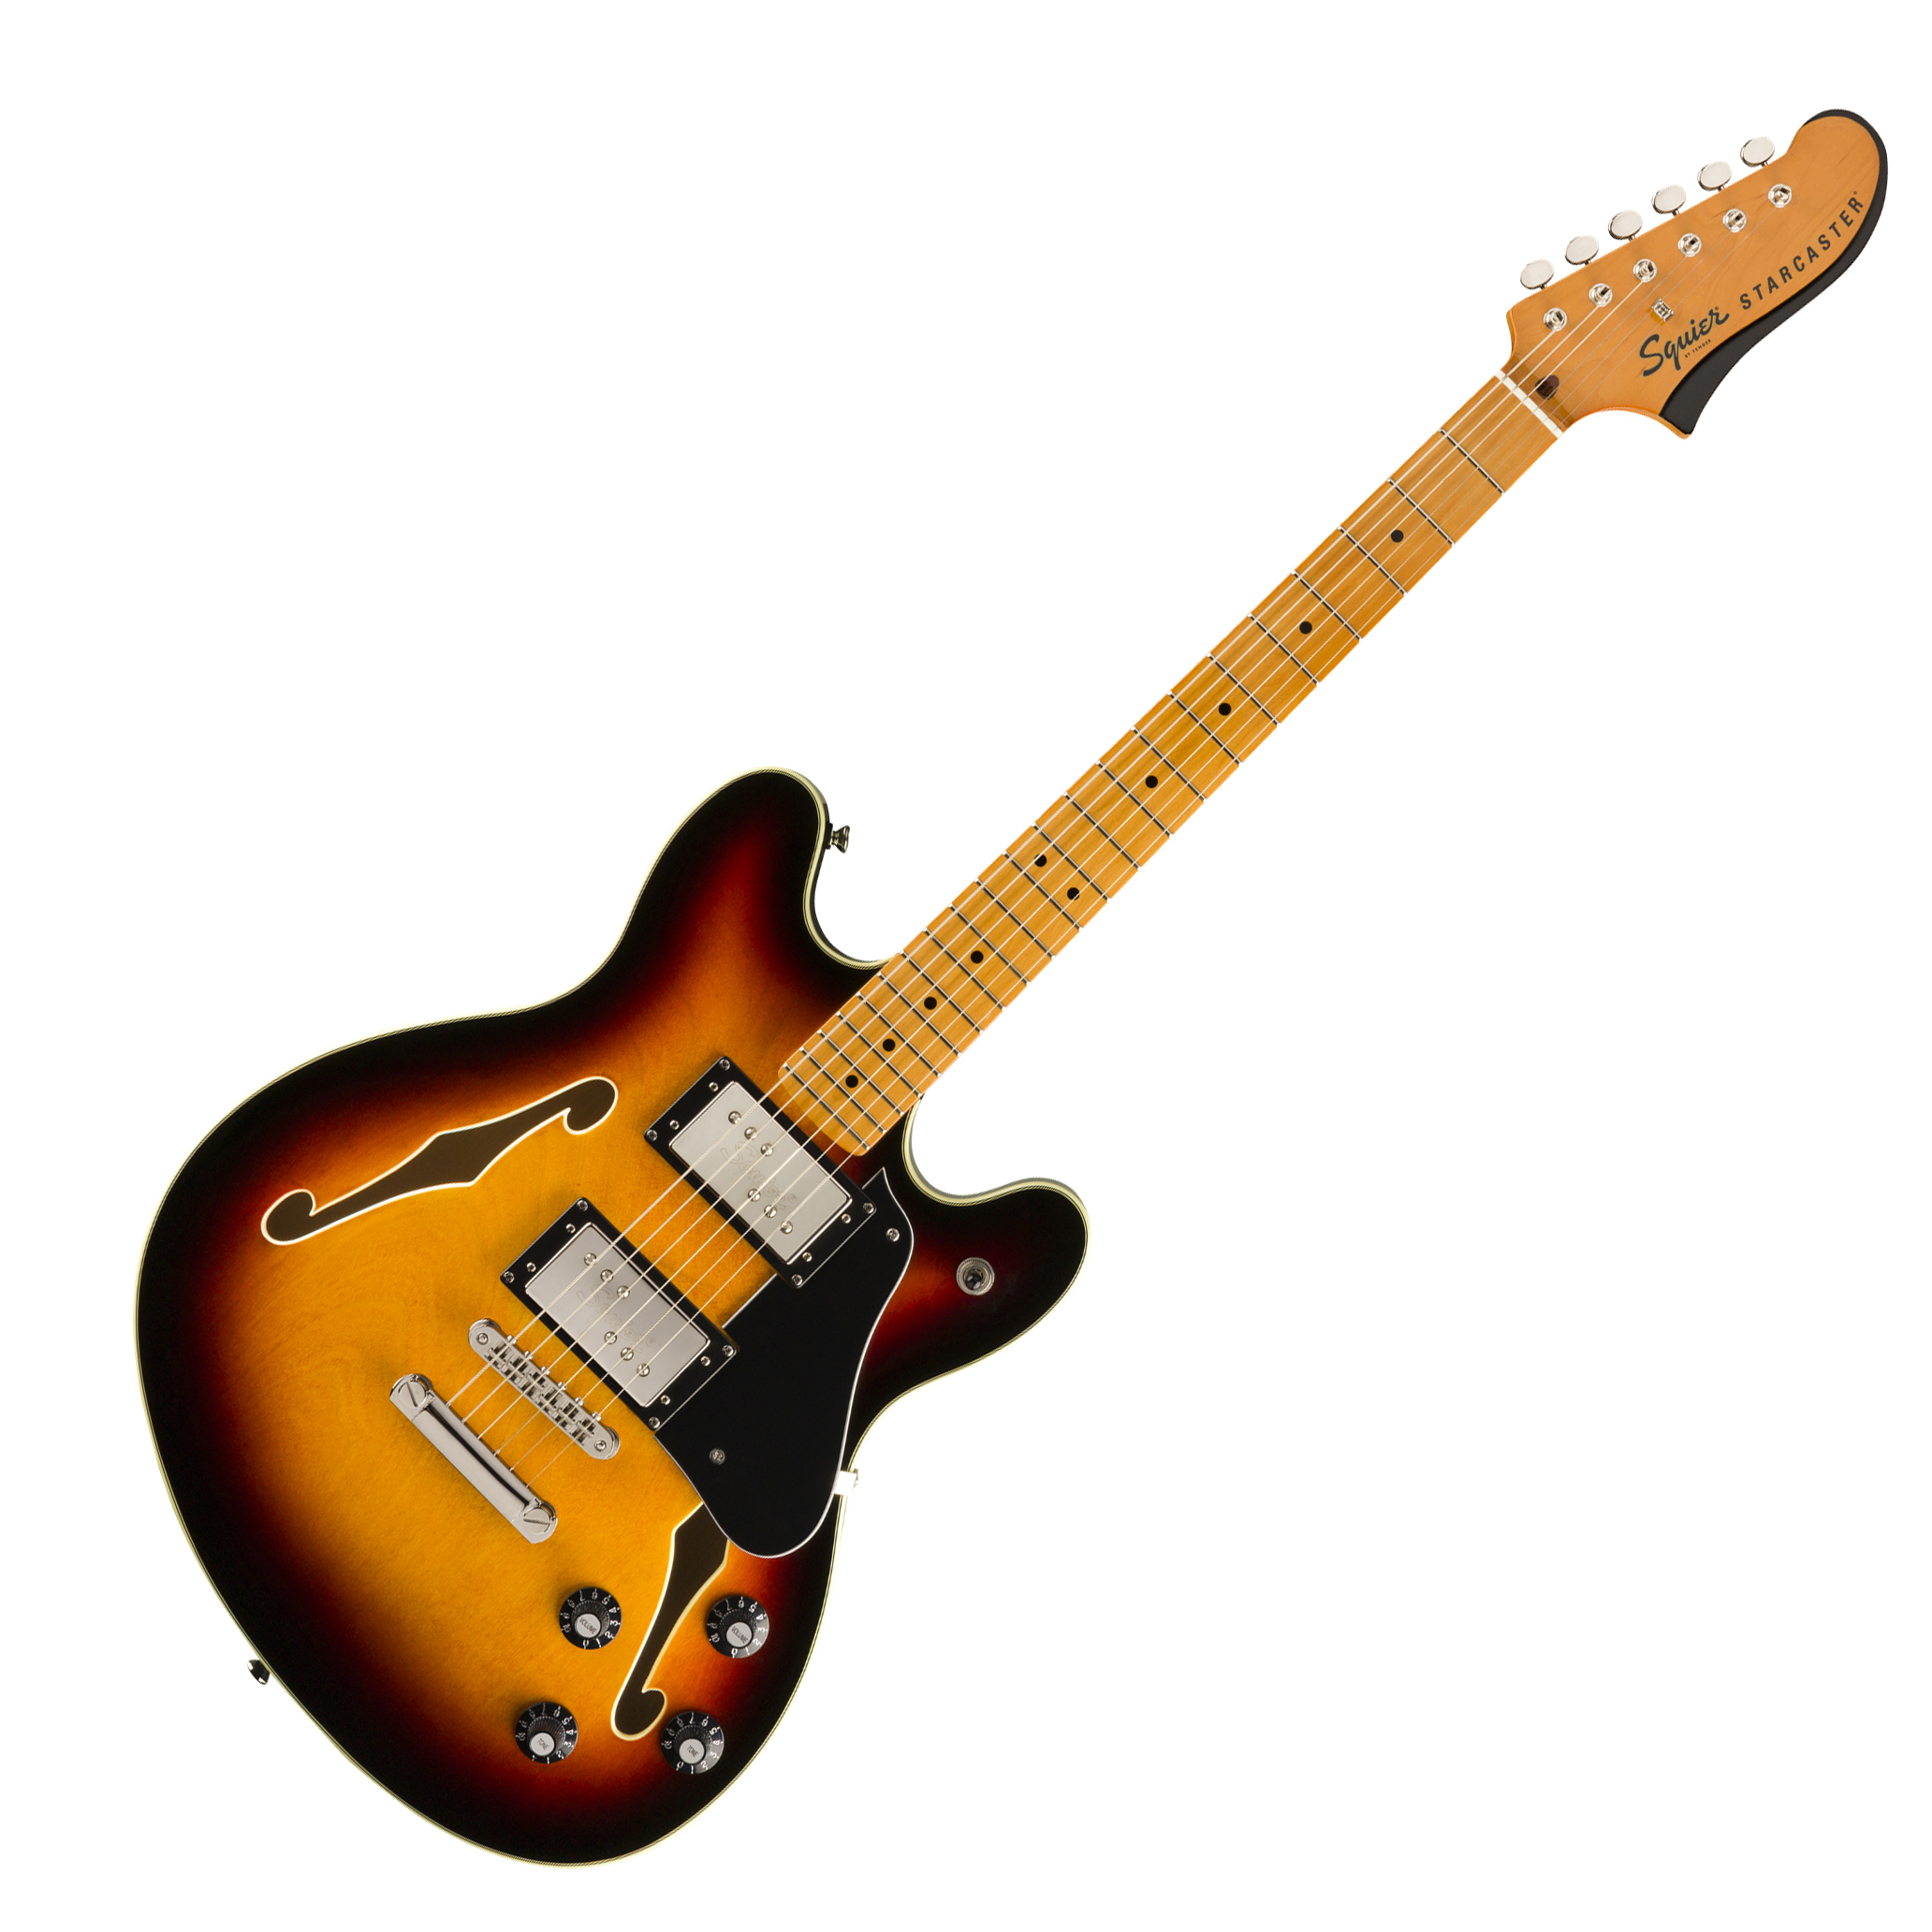 Fender Squier Classic Vibe Starcaster Maple Fingerbaord 3-Color Sunburst  | Obrázok 1 | eplay.sk